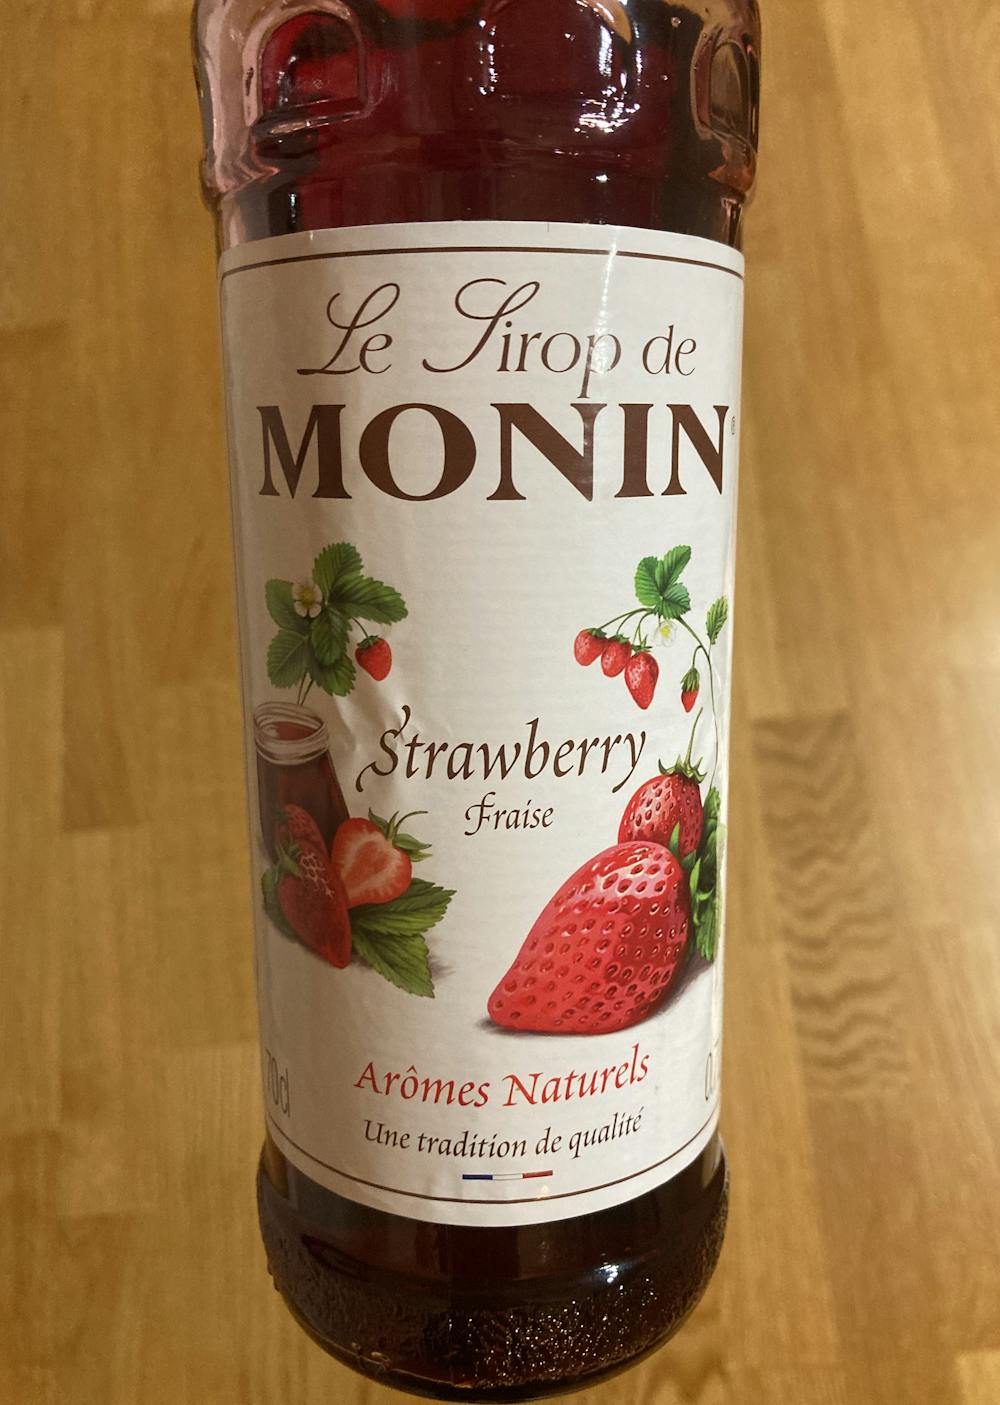 Strawberry fraise, Monin